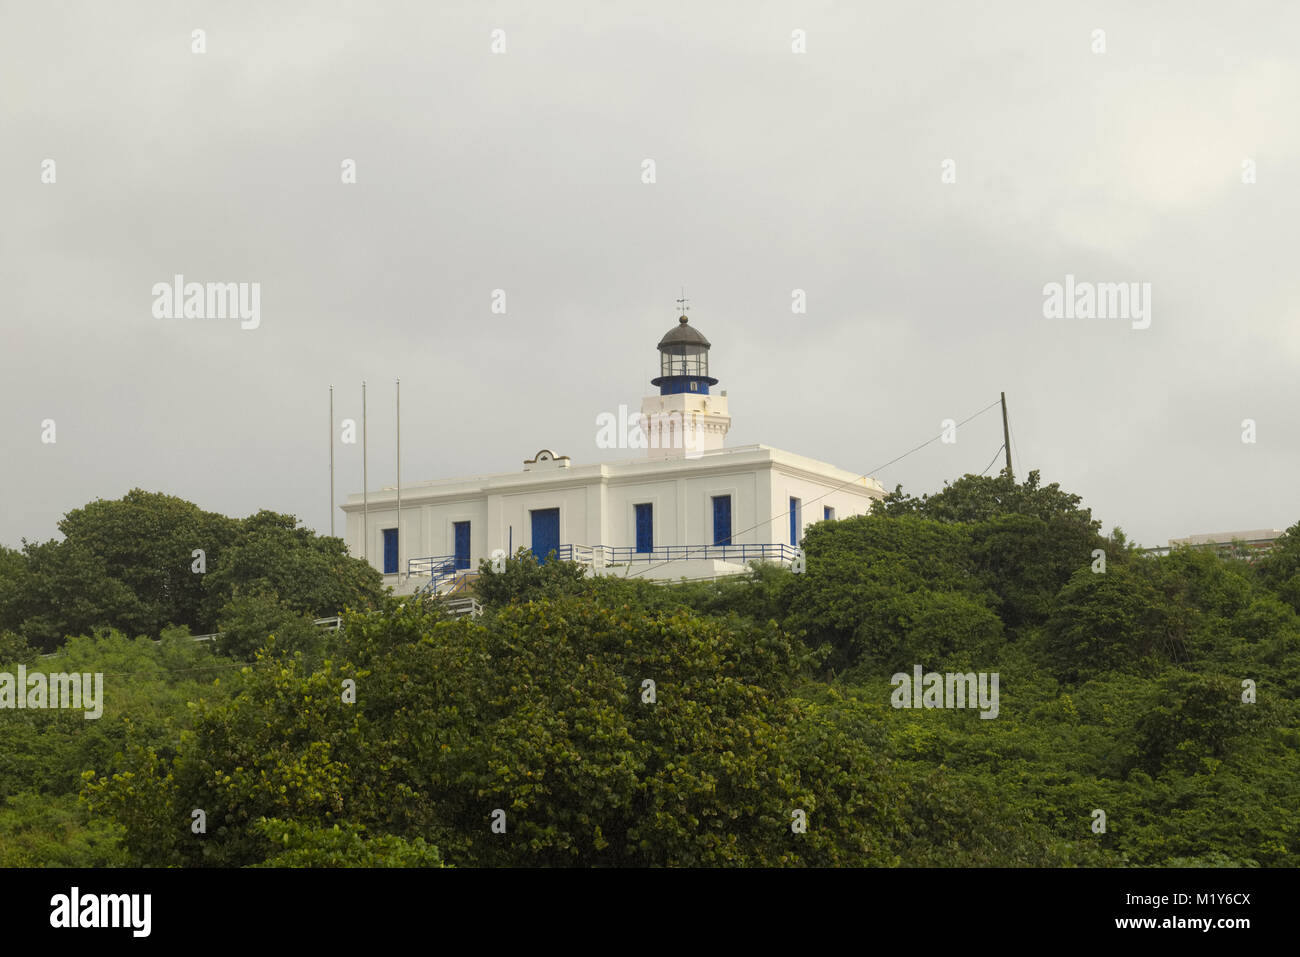 Anzeigen von Arecibo Leuchtturm von Poza del Obispo Strand, Arecibo in Puerto Rico Stockfoto